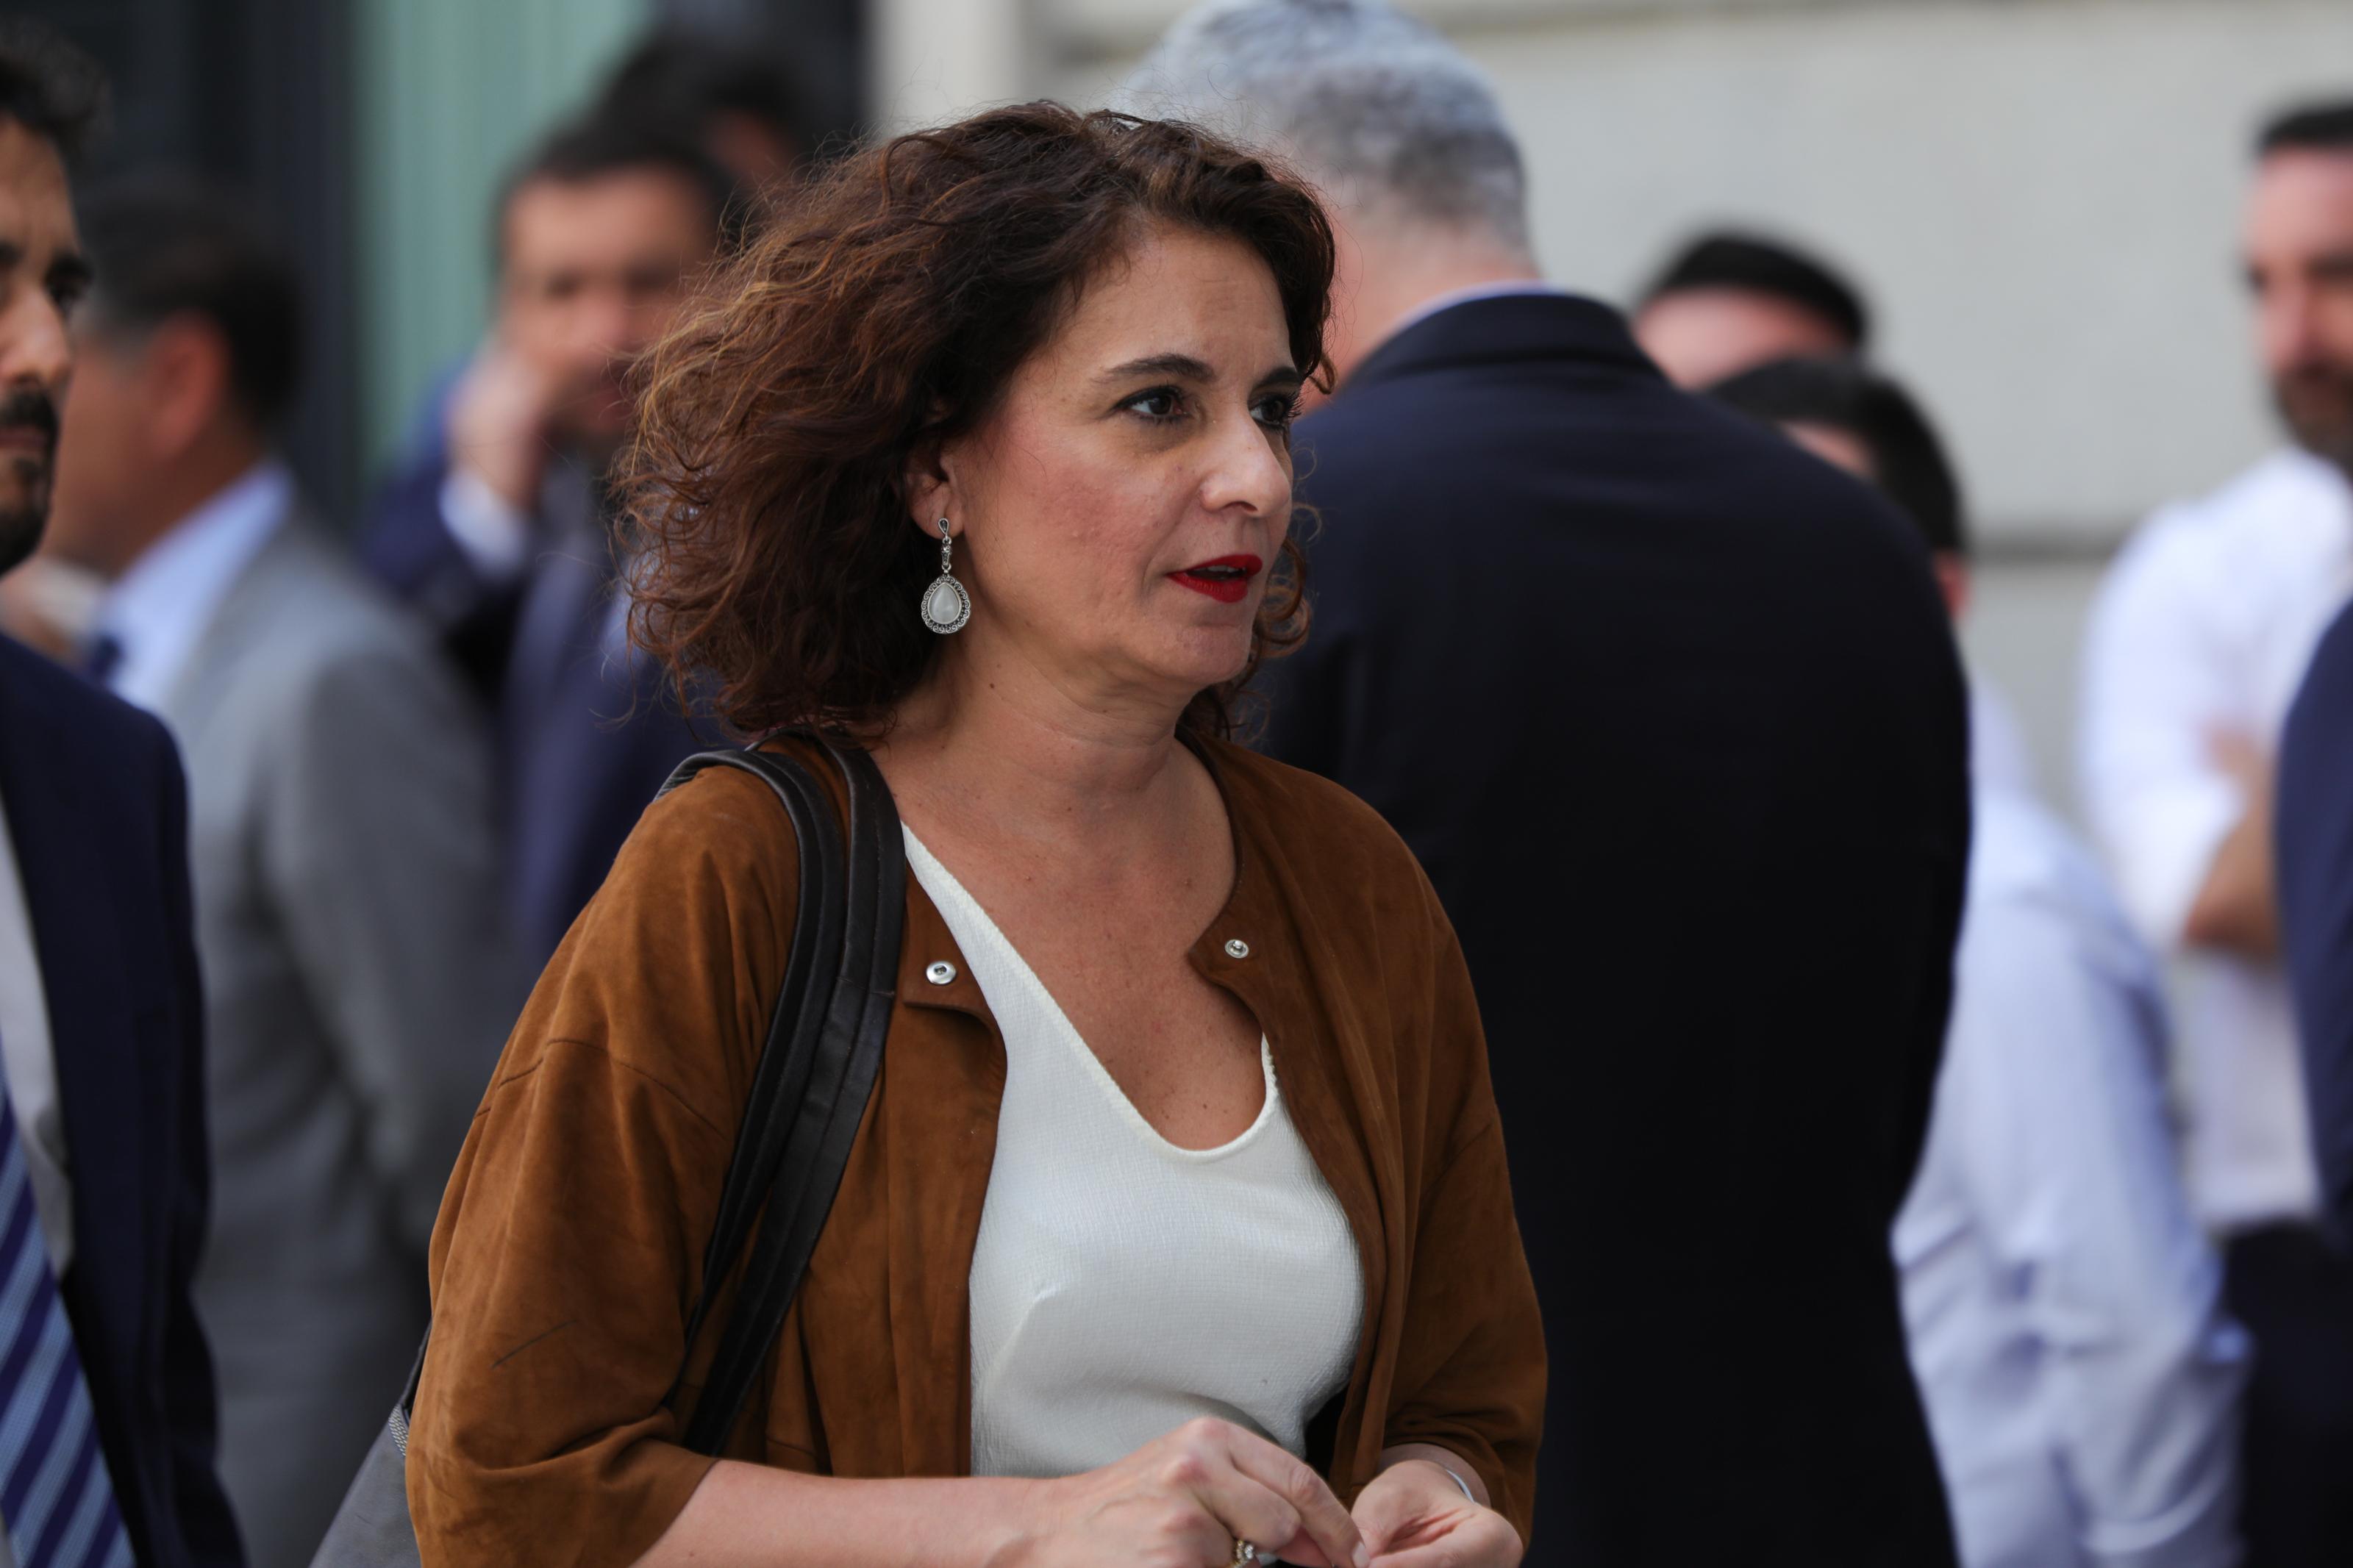  La ministra de Hacienda en funciones, María Jesús Montero